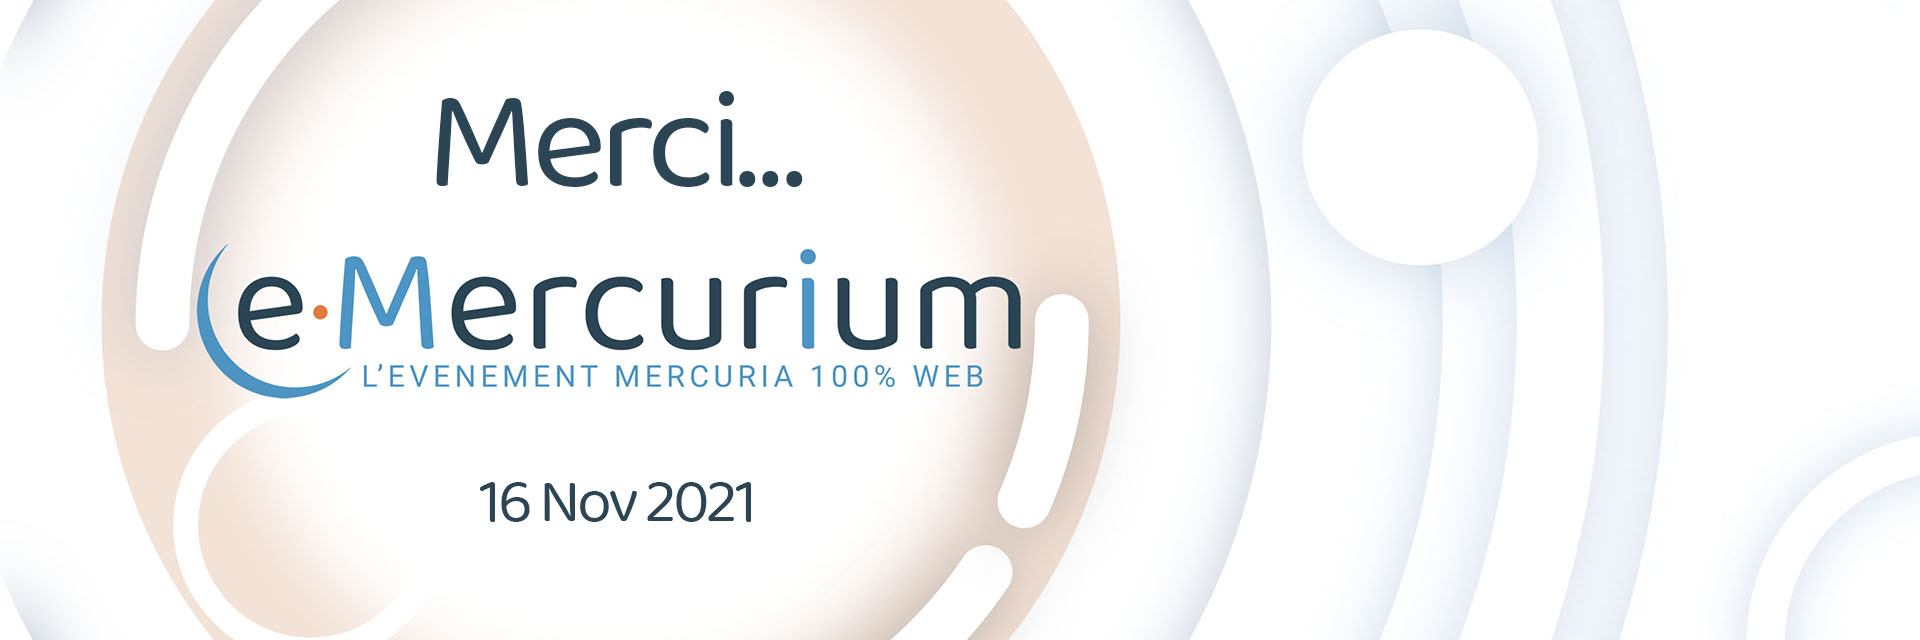 Mercuria e-Mercurium Merci 2021